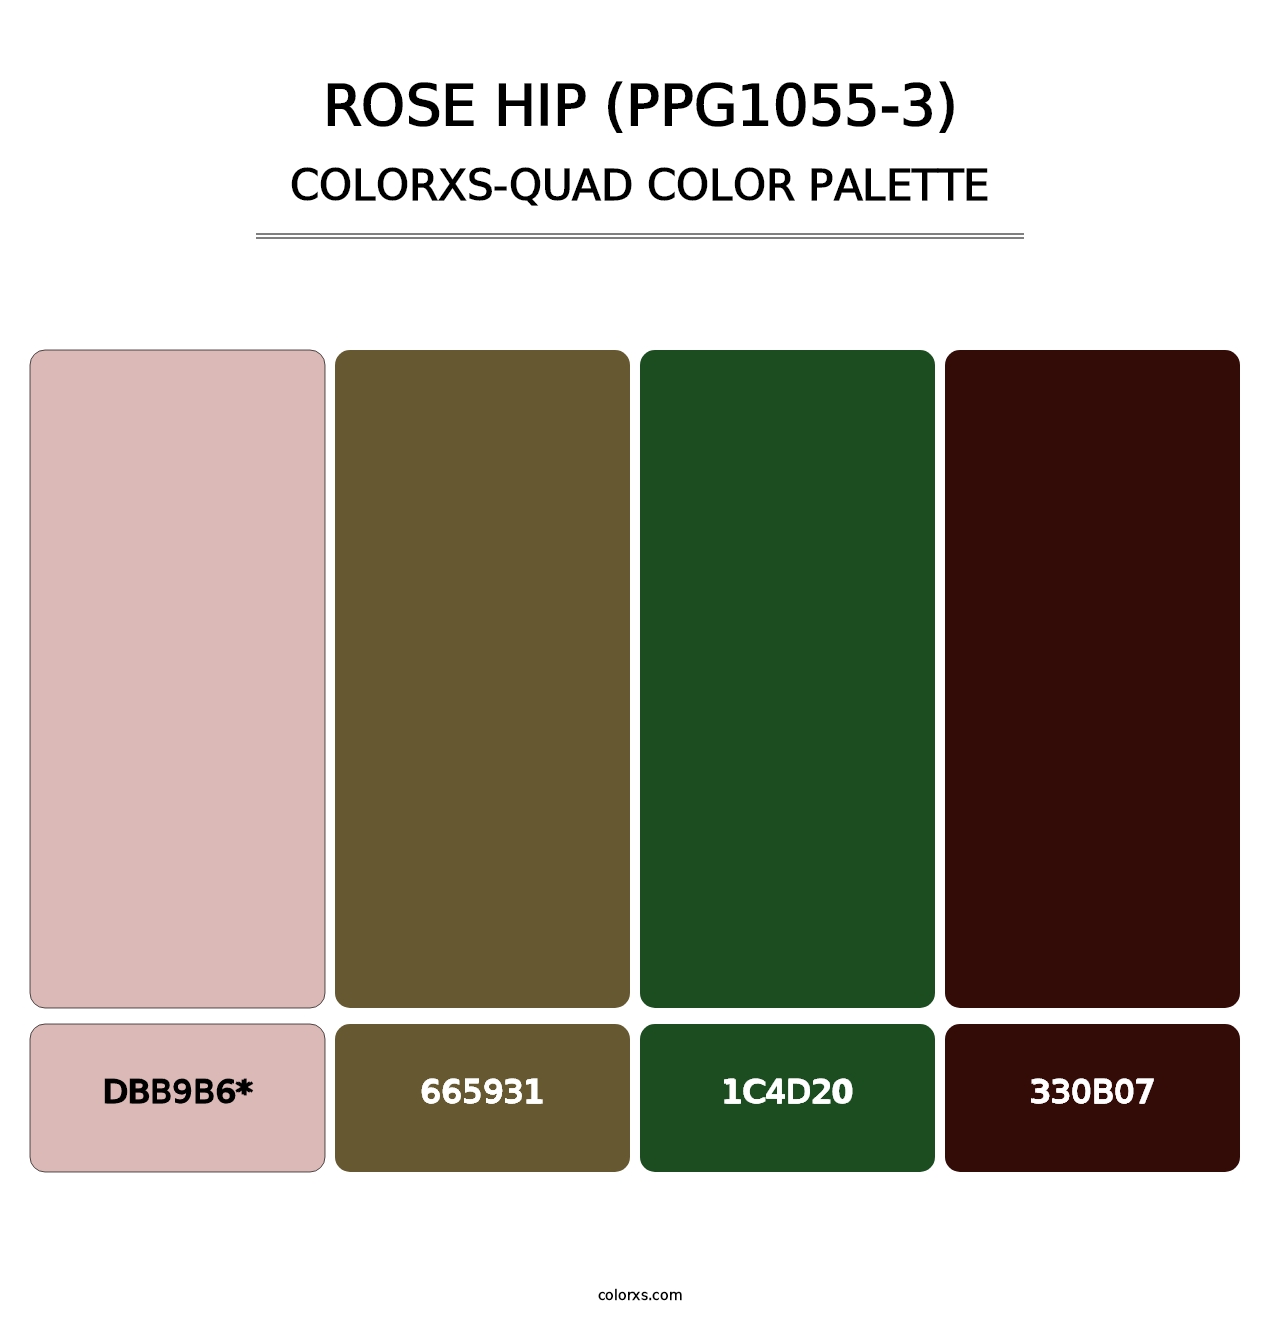 Rose Hip (PPG1055-3) - Colorxs Quad Palette